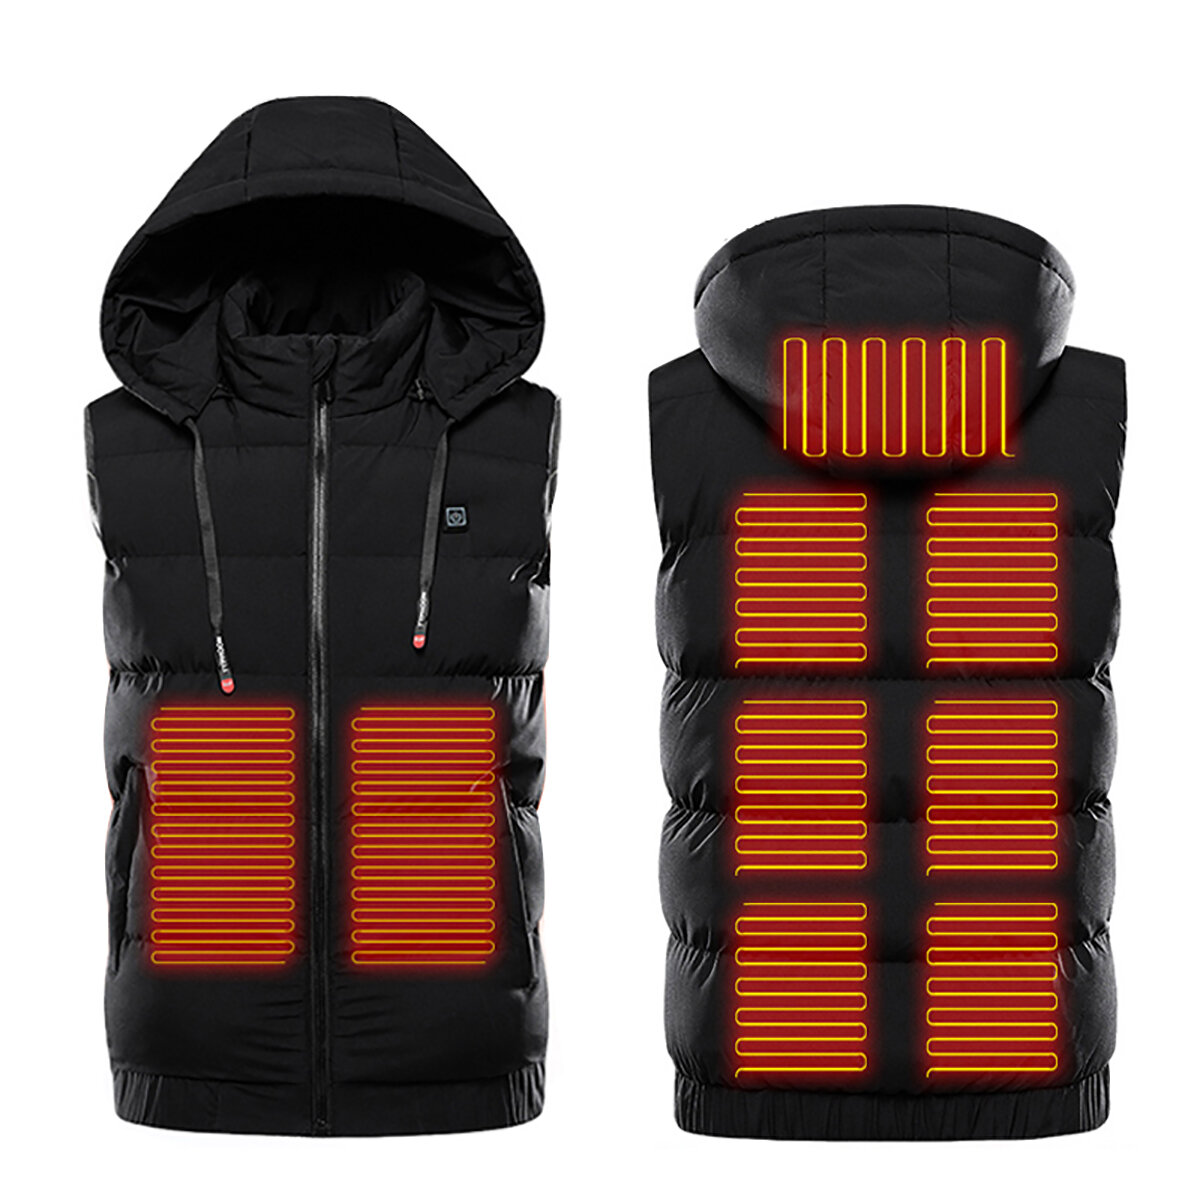 Image of Unisex Electric Heated Winter Warm Jacket Hooded Coat Clothing USB Heating M-7XL